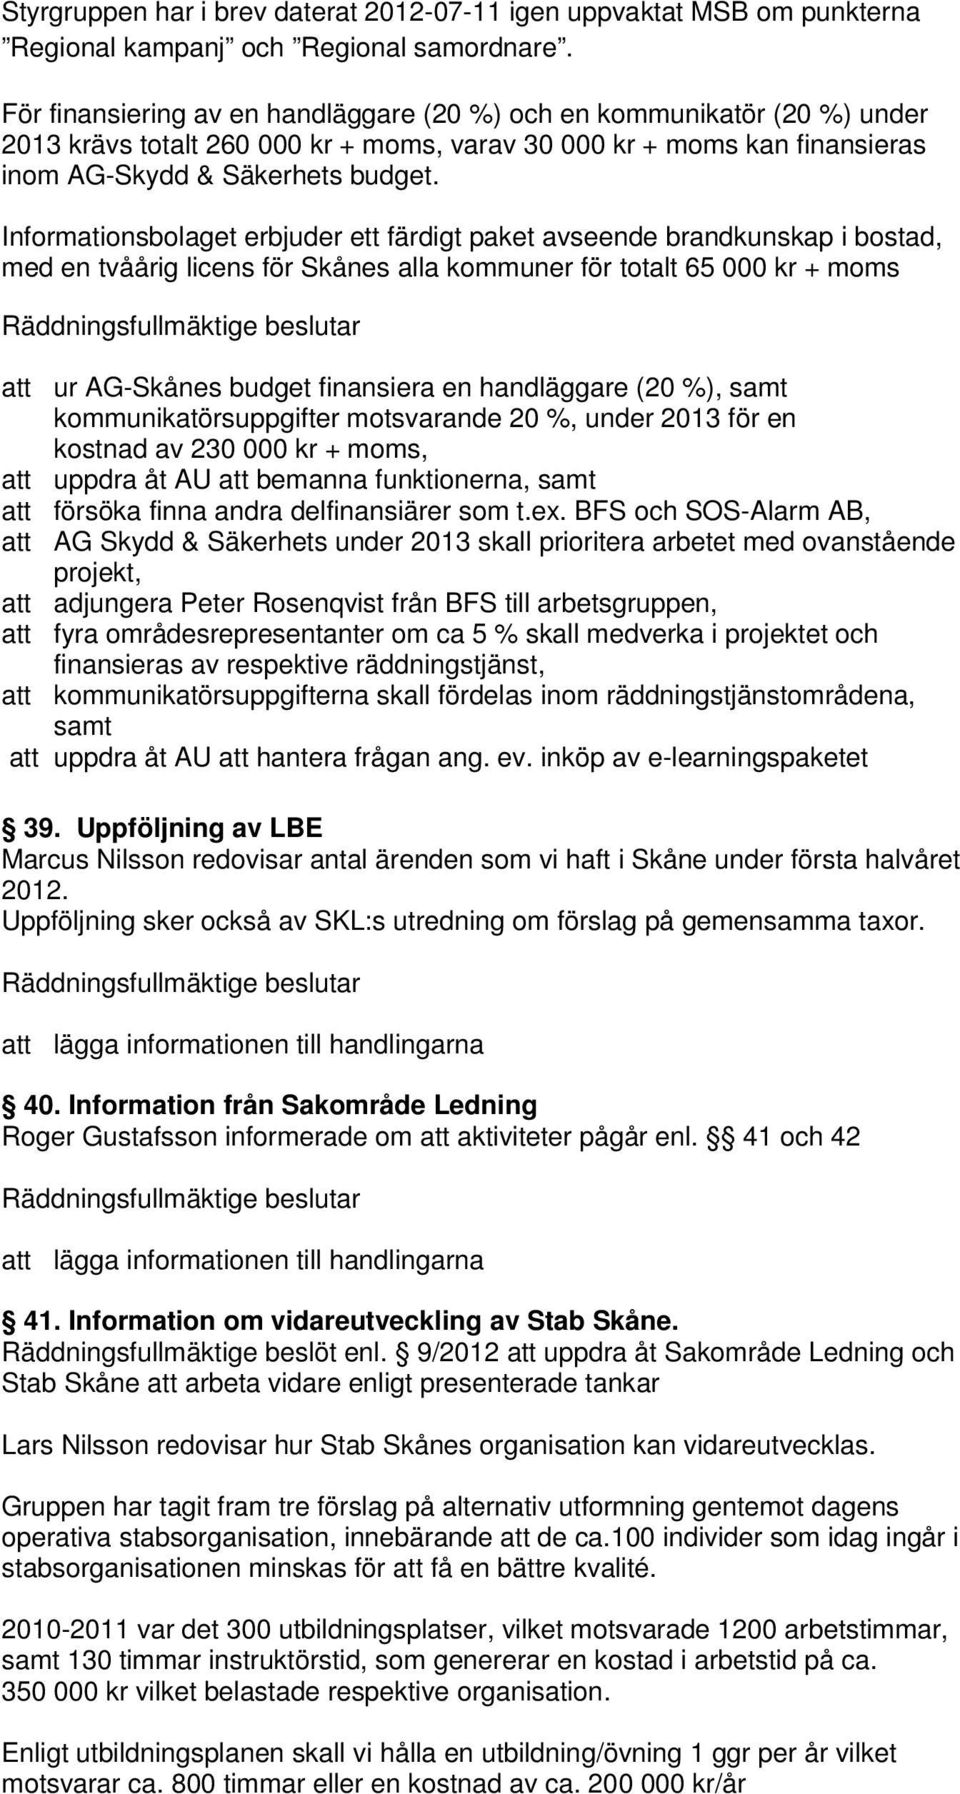 Informationsbolaget erbjuder ett färdigt paket avseende brandkunskap i bostad, med en tvåårig licens för Skånes alla kommuner för totalt 65 000 kr + moms att ur AG-Skånes budget finansiera en